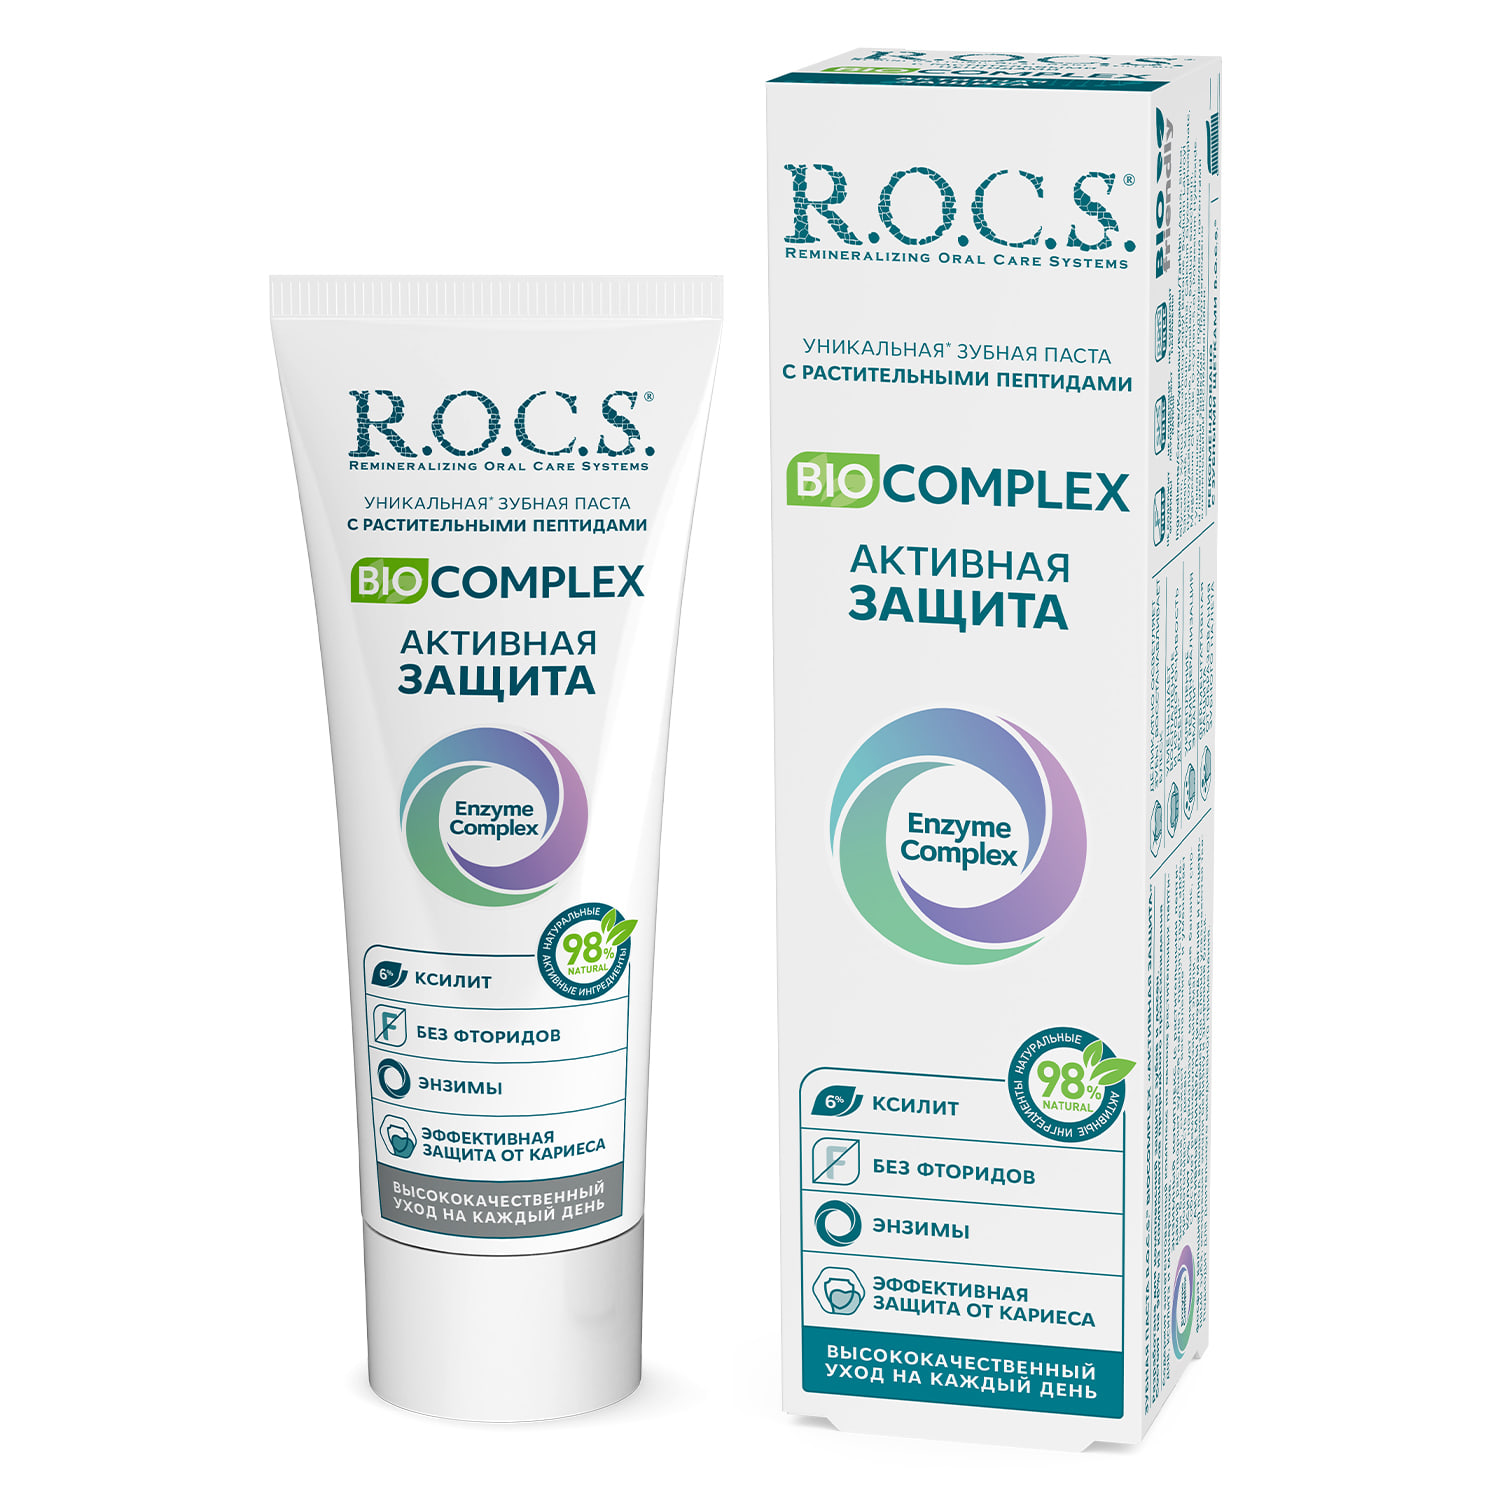 Зубная паста ROCS r o c s biocomplex зубная паста активная защита 94 г